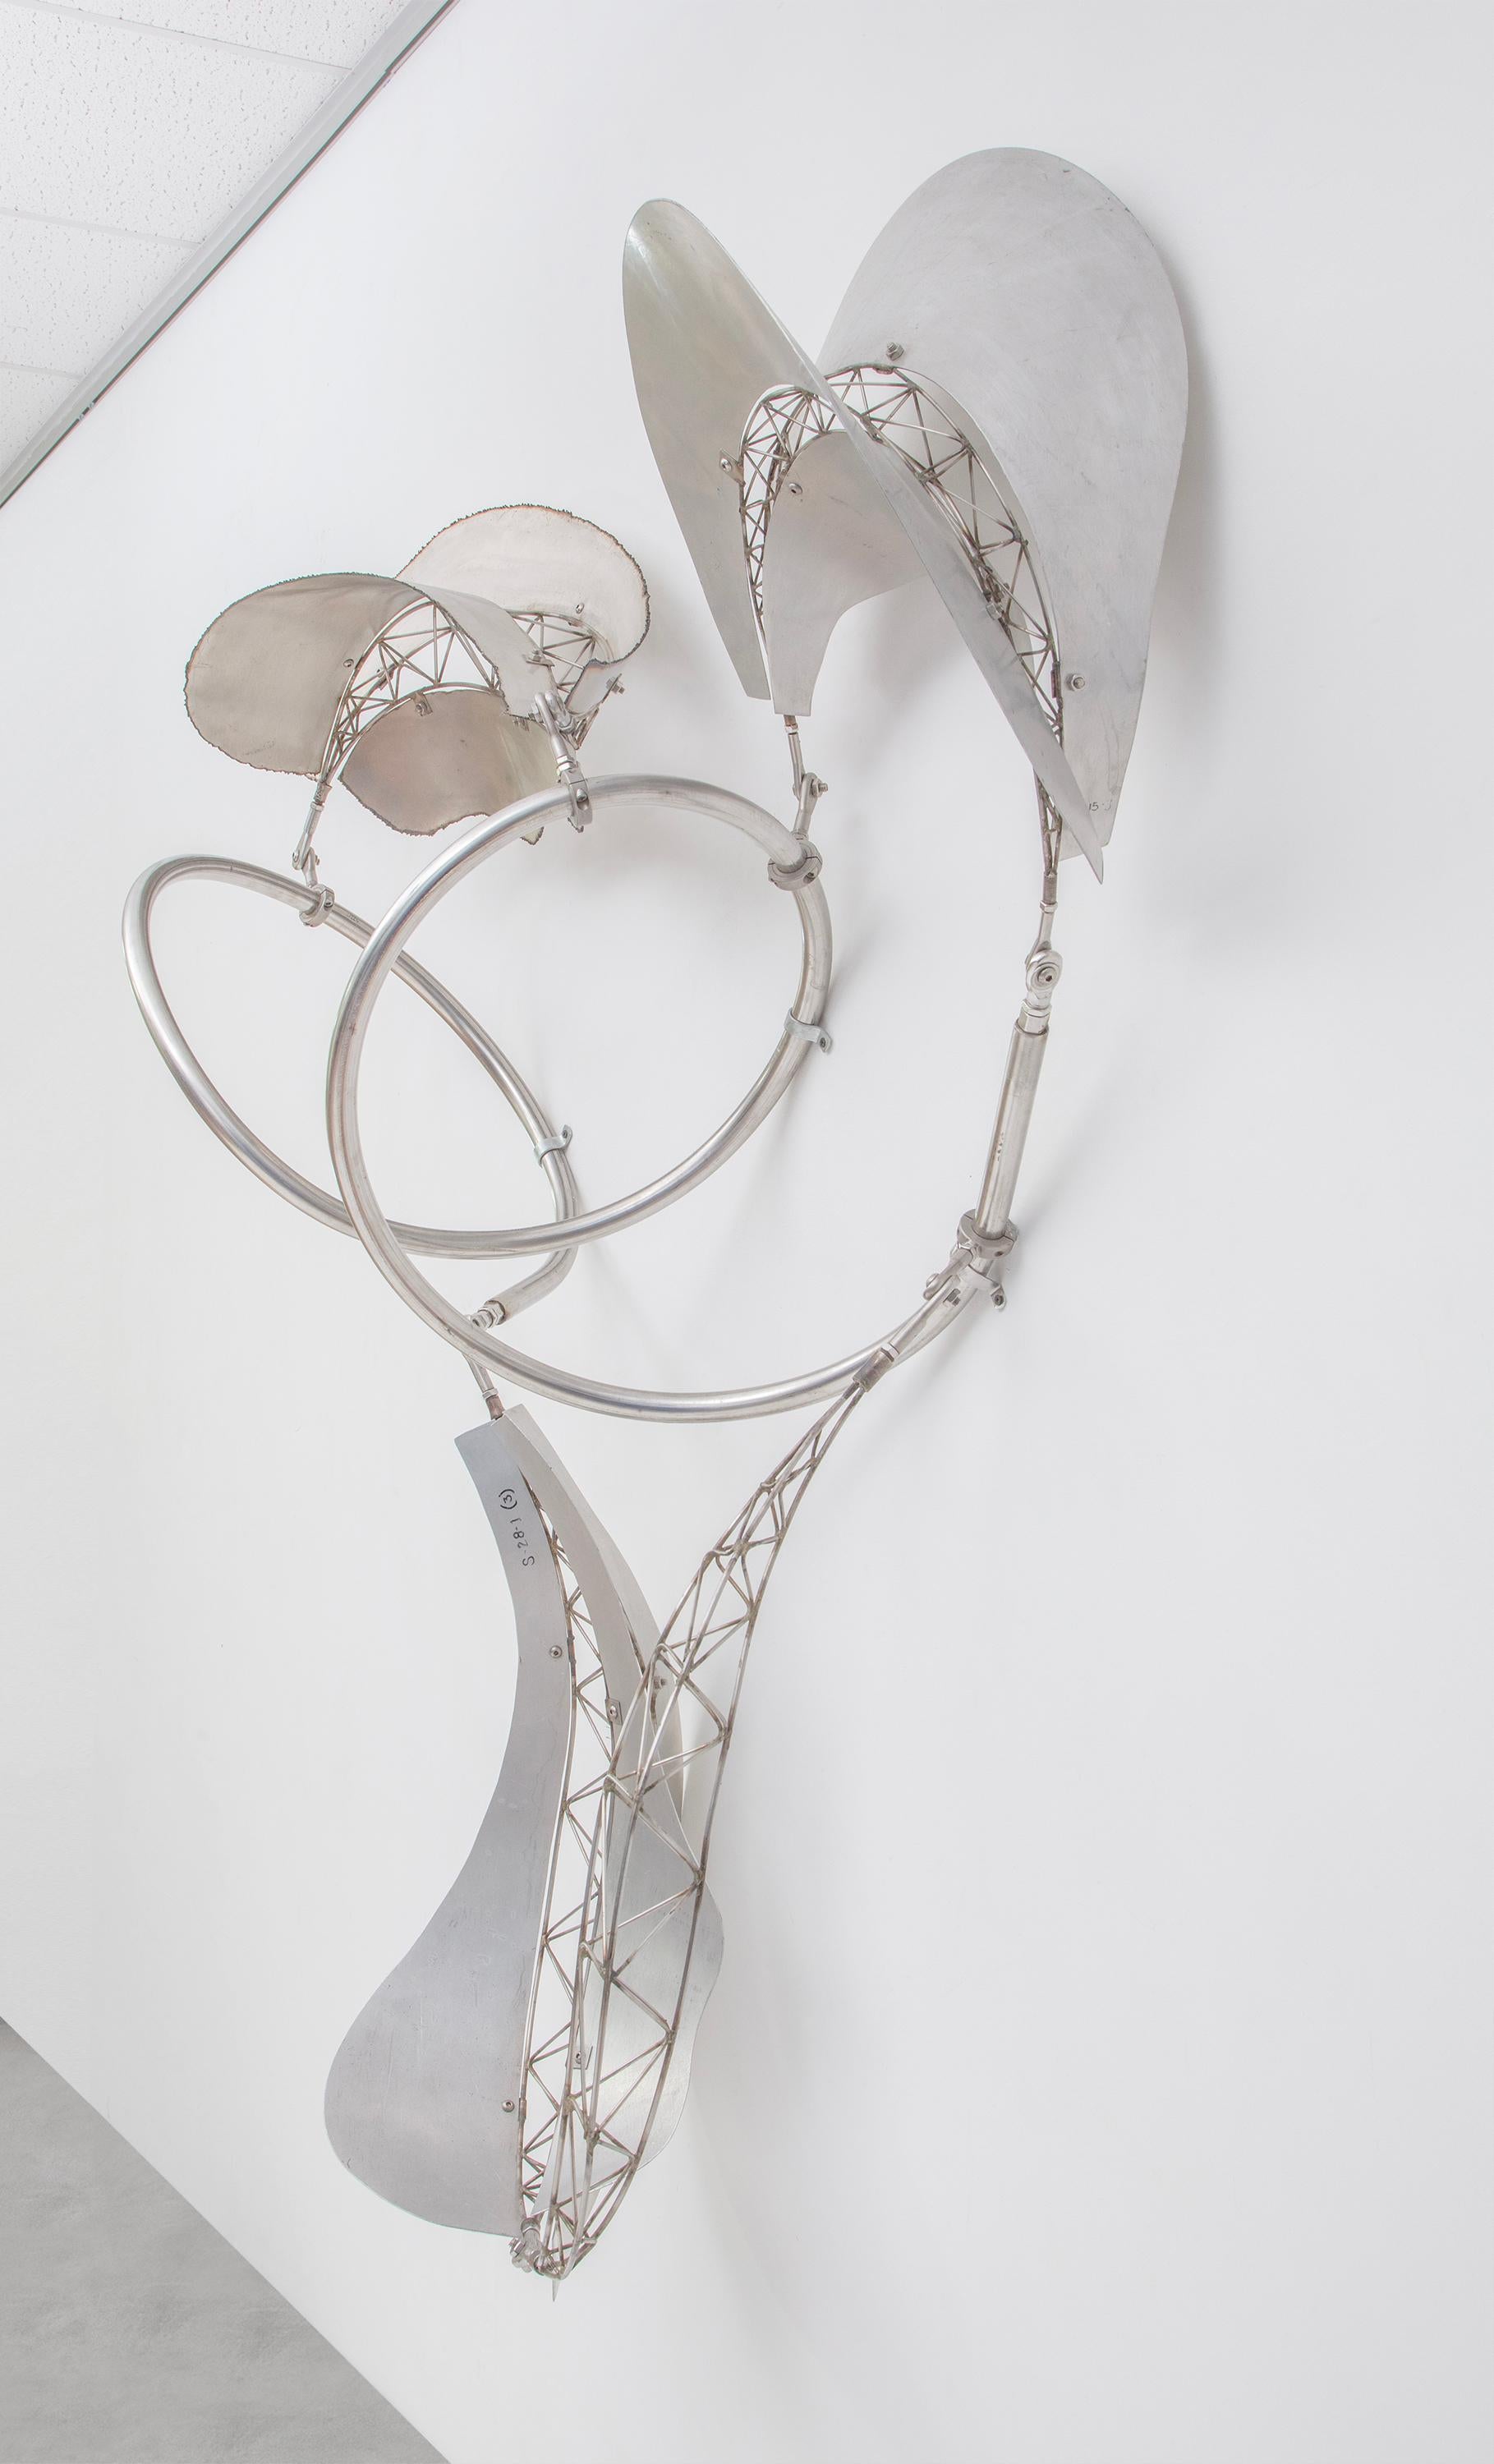 Dadap - Sculpture by Frank Stella